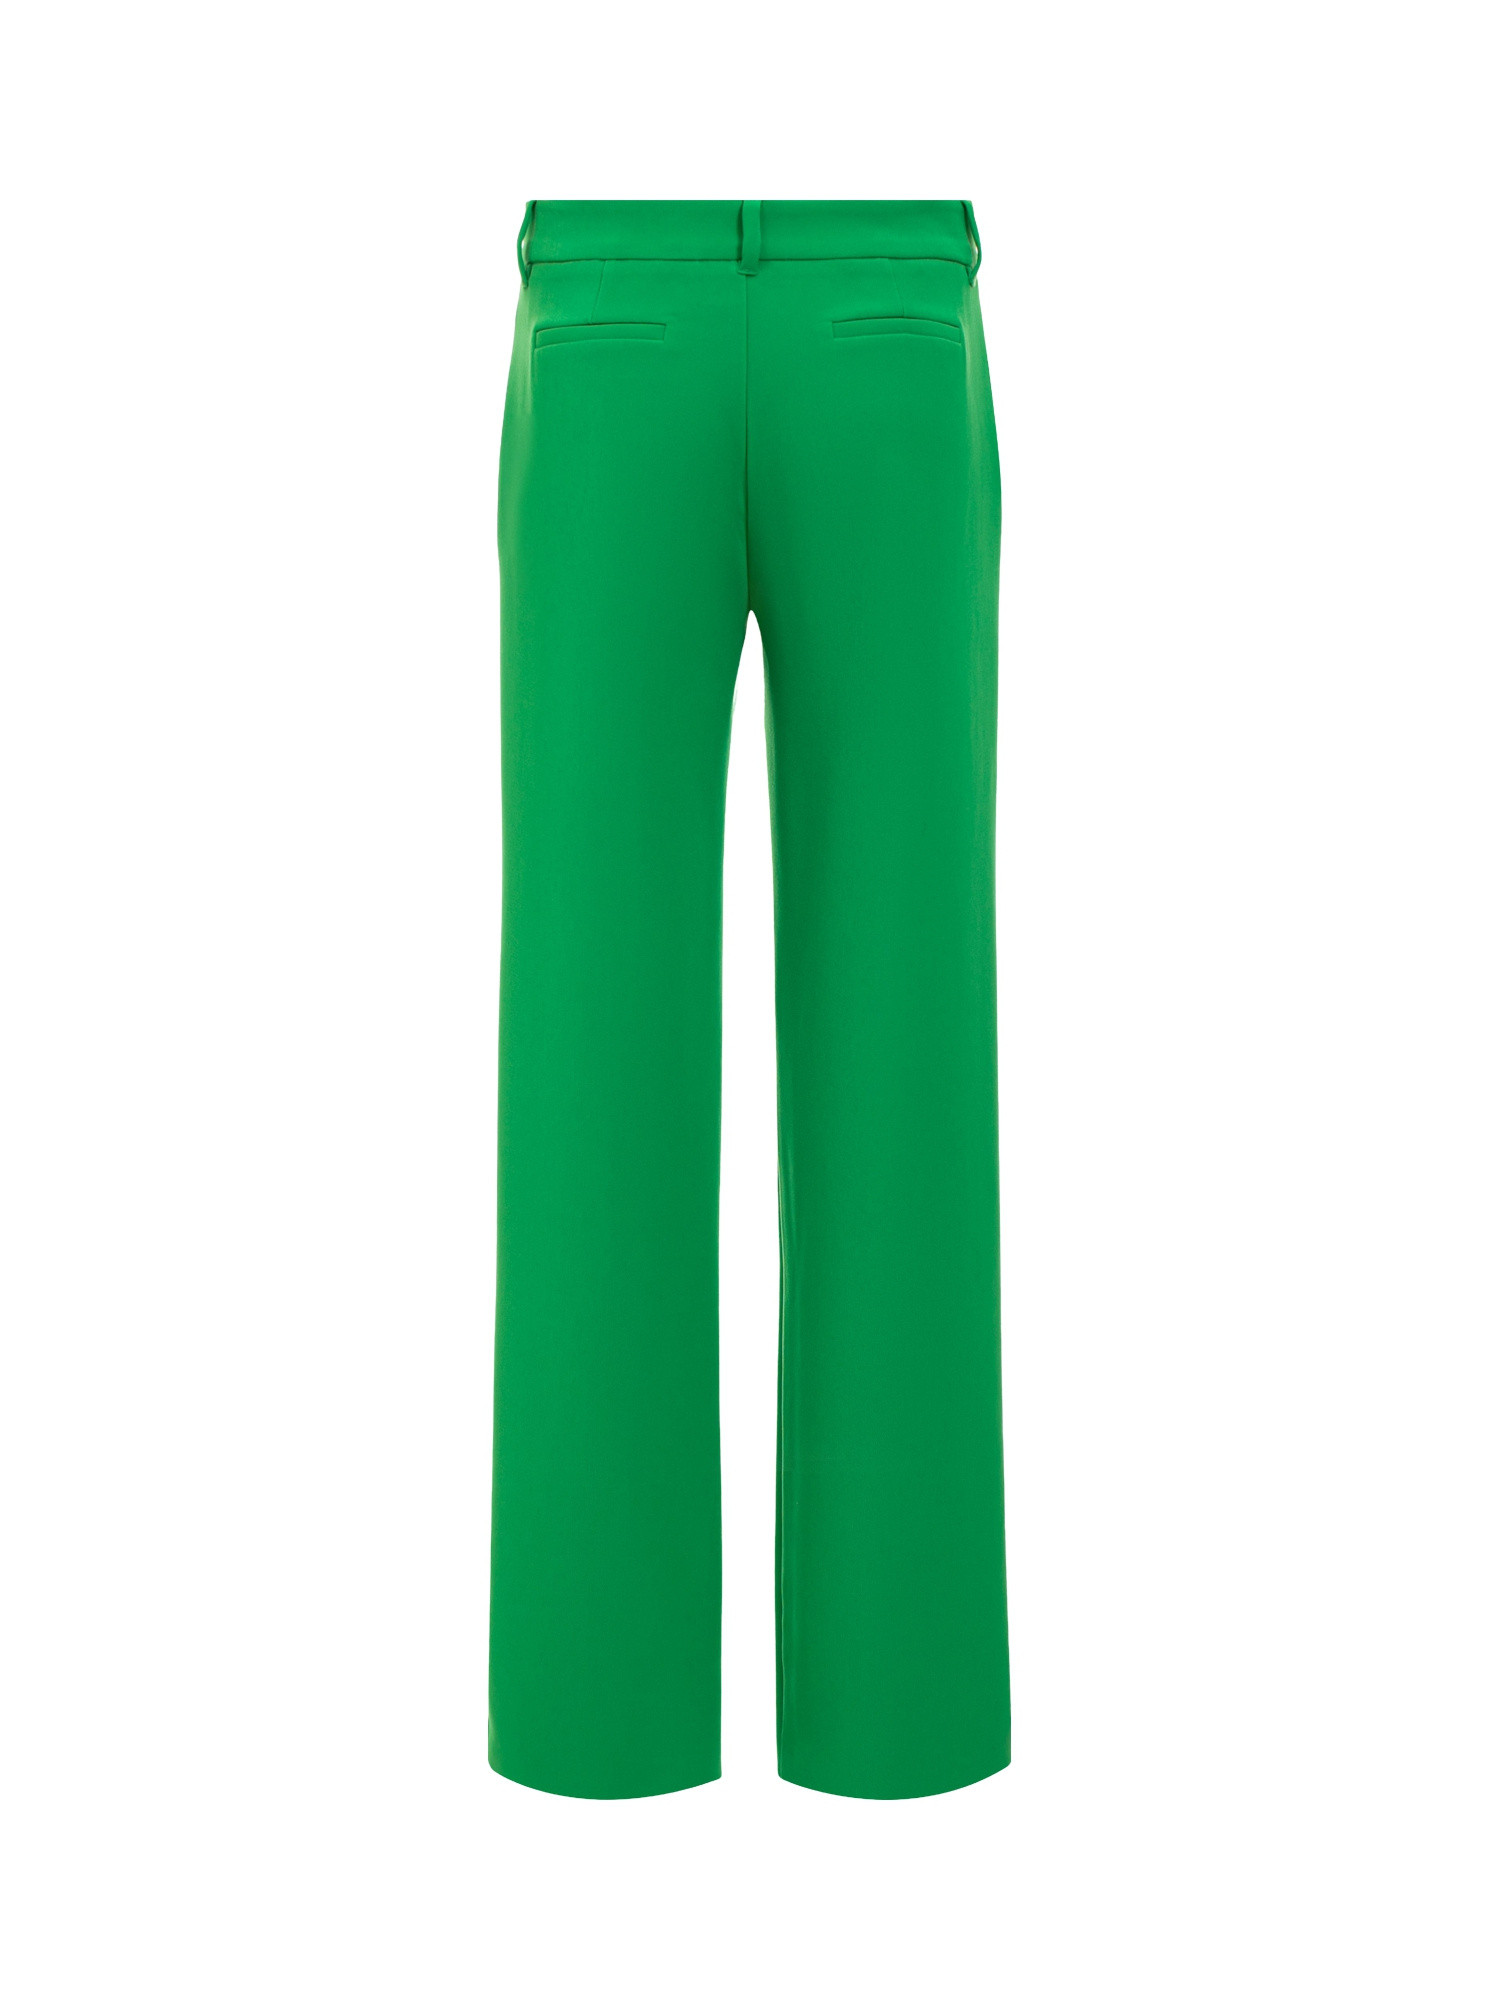 Chiara Ferragni - Pantalone in cady bistretch, bottone gioiello e spacco in centro davanti, linea morbida, Verde, large image number 1